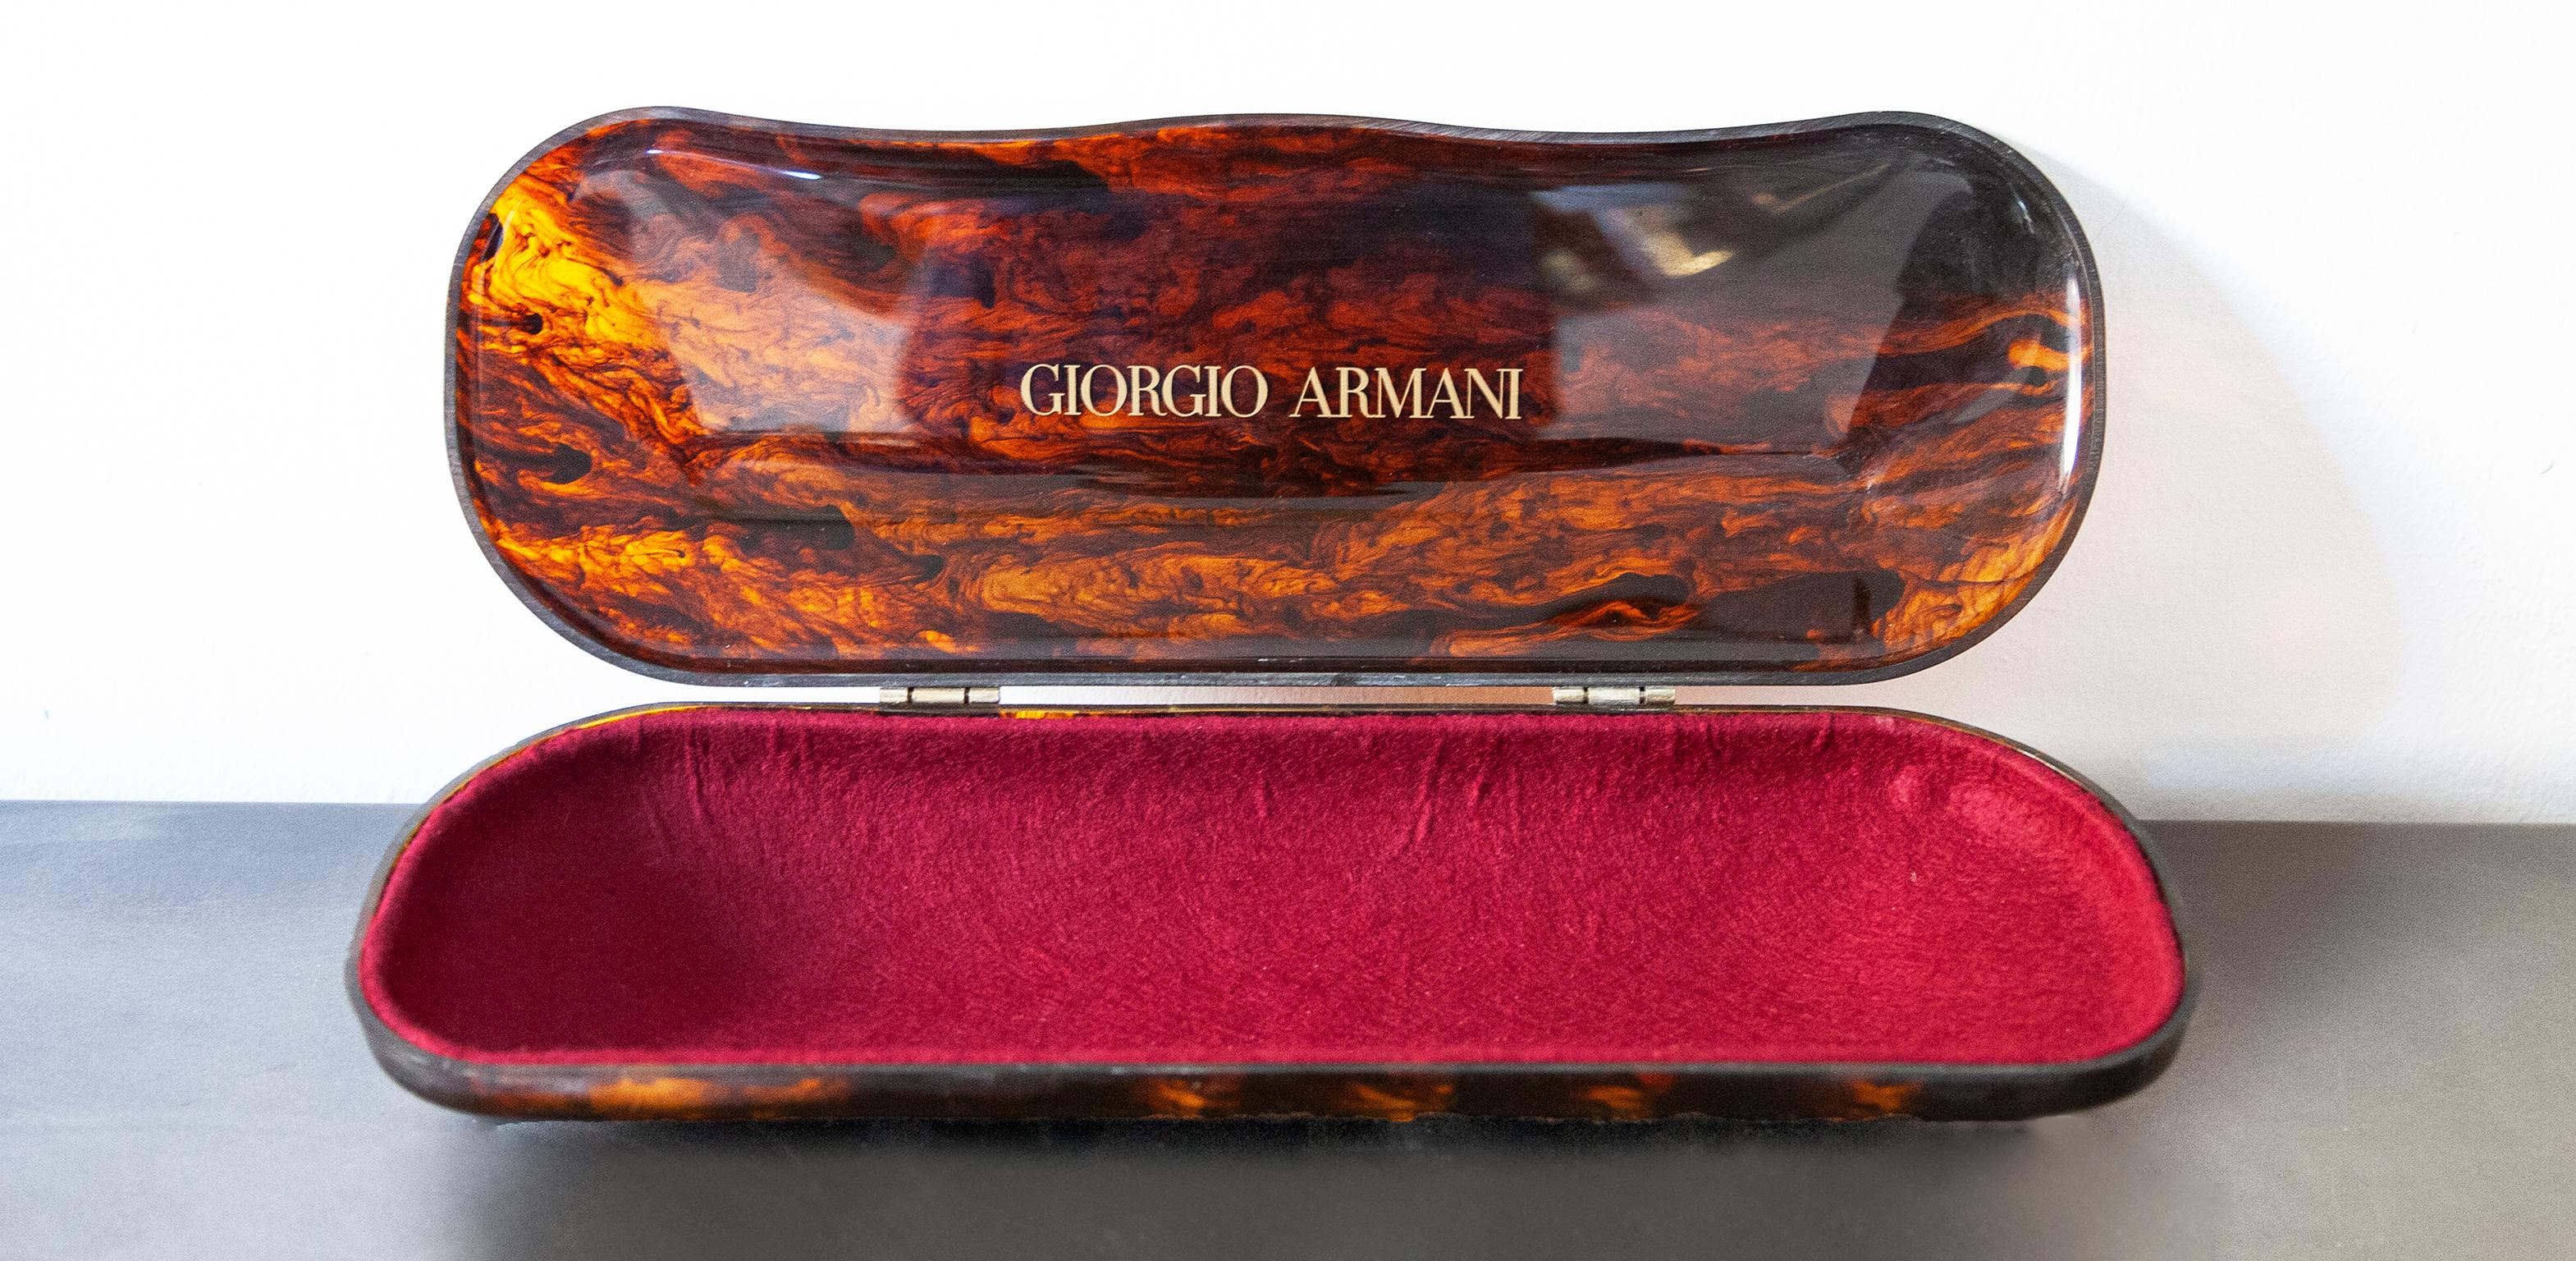 Très grande boîte de table vintage en acrylique Giorgio Armani en motif tigre avec une incrustation en feutre rouge en très bon état vintage.

Mesures : 10 H x 46 B x15 D cm.